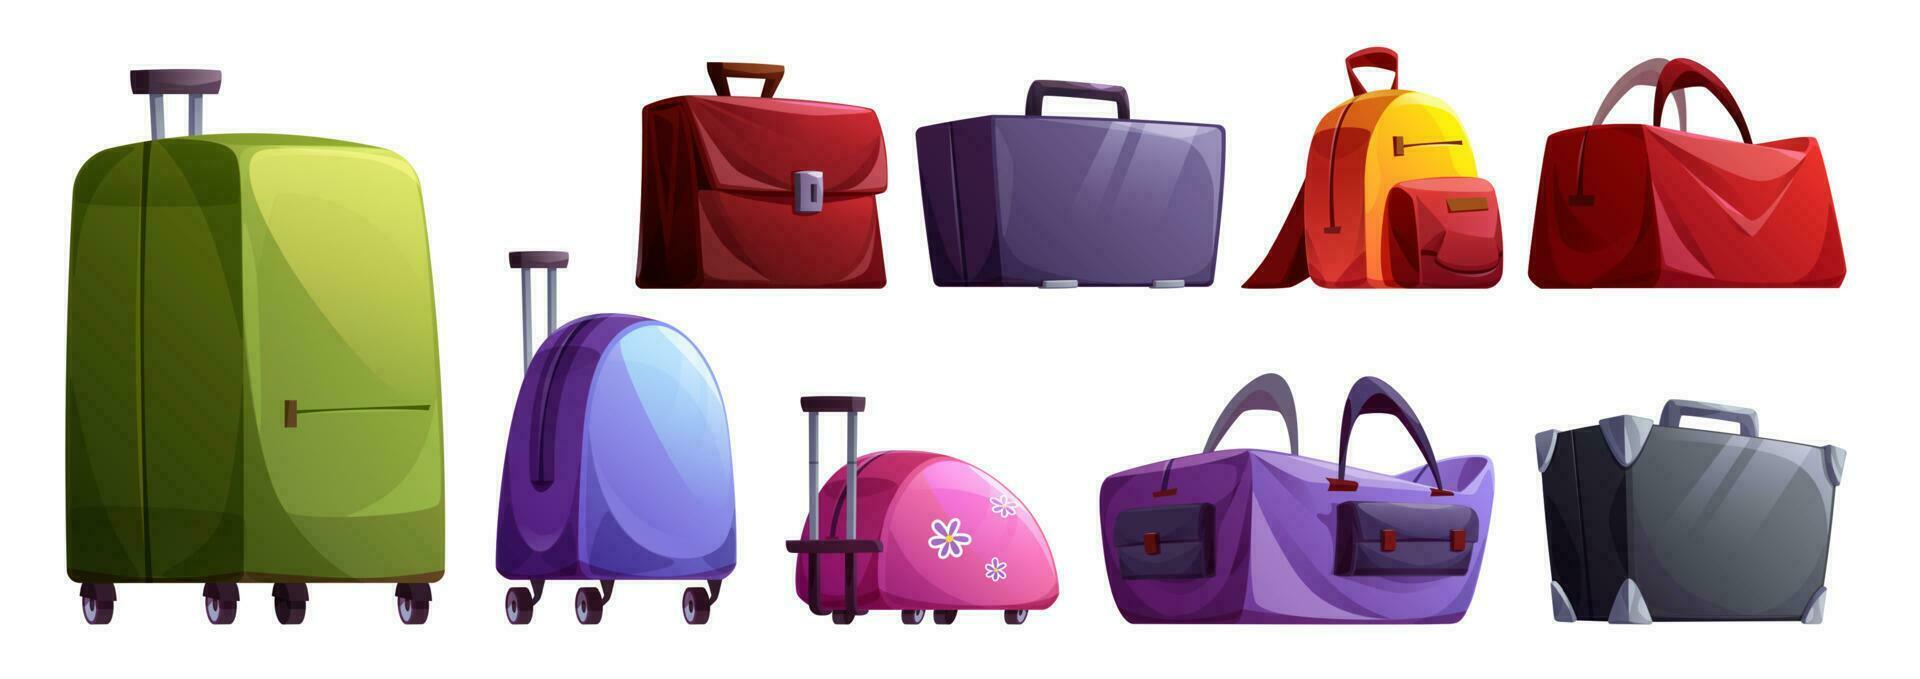 Voyage bagage et valise vecteur dessin animé ensemble